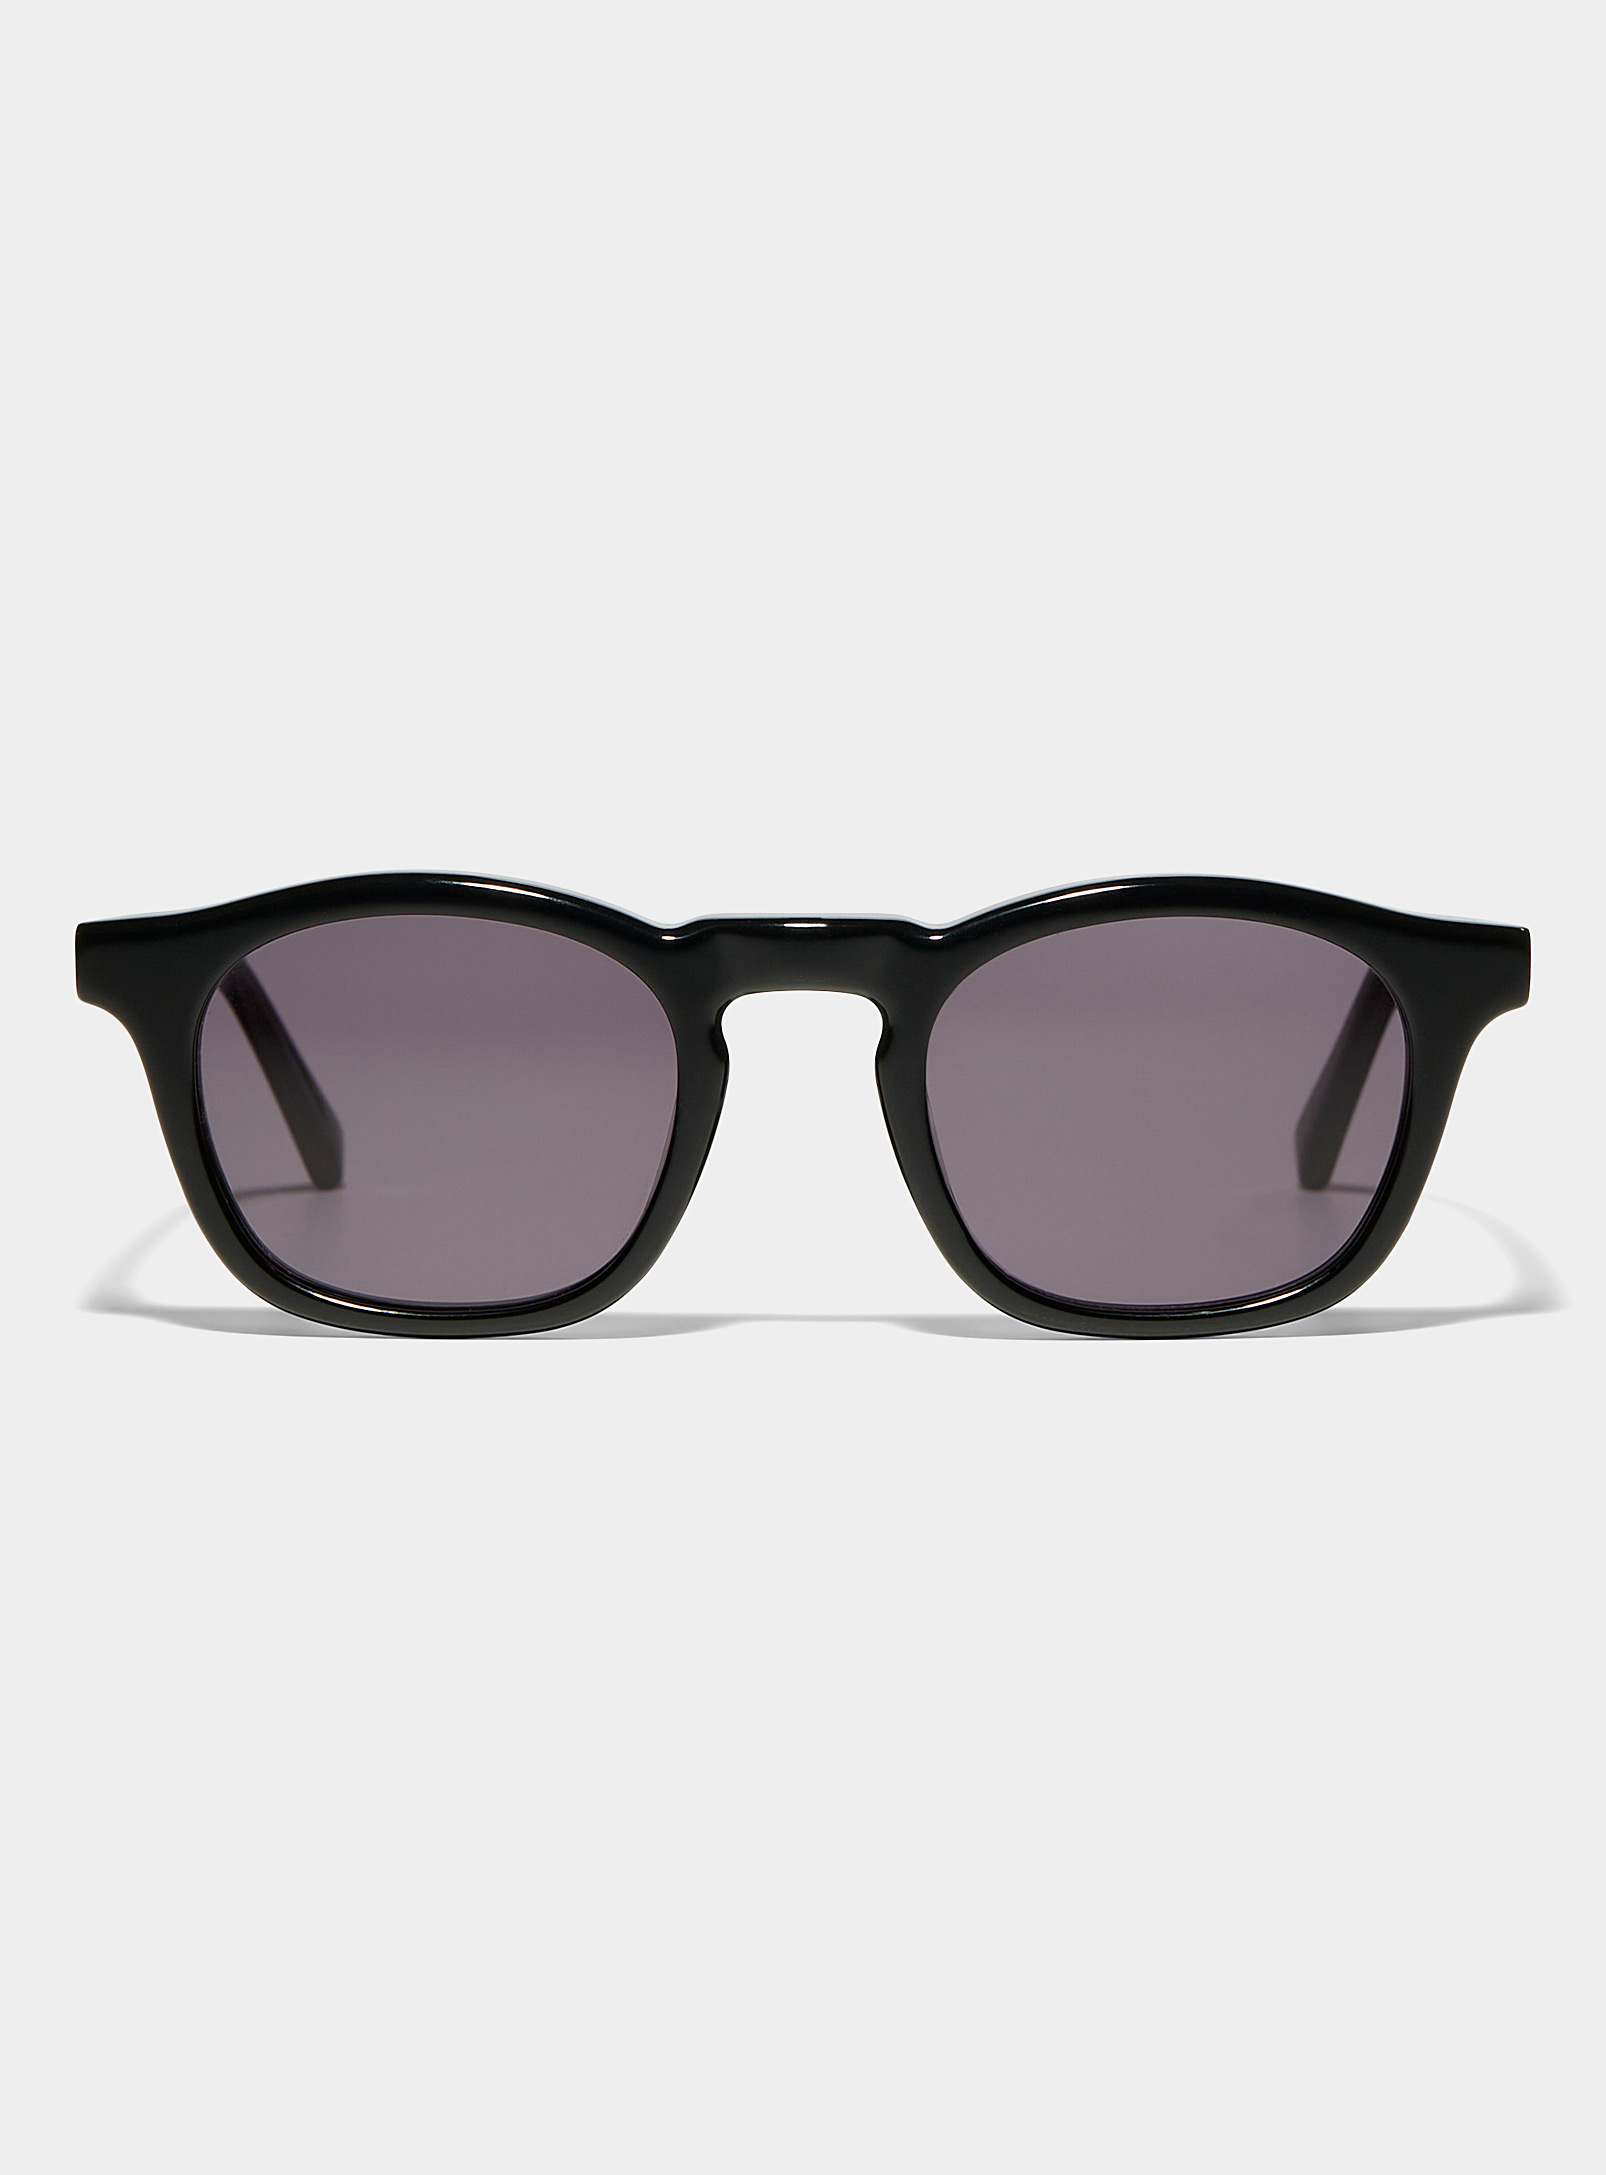 French Kiwis Thomas Round Sunglasses In Black